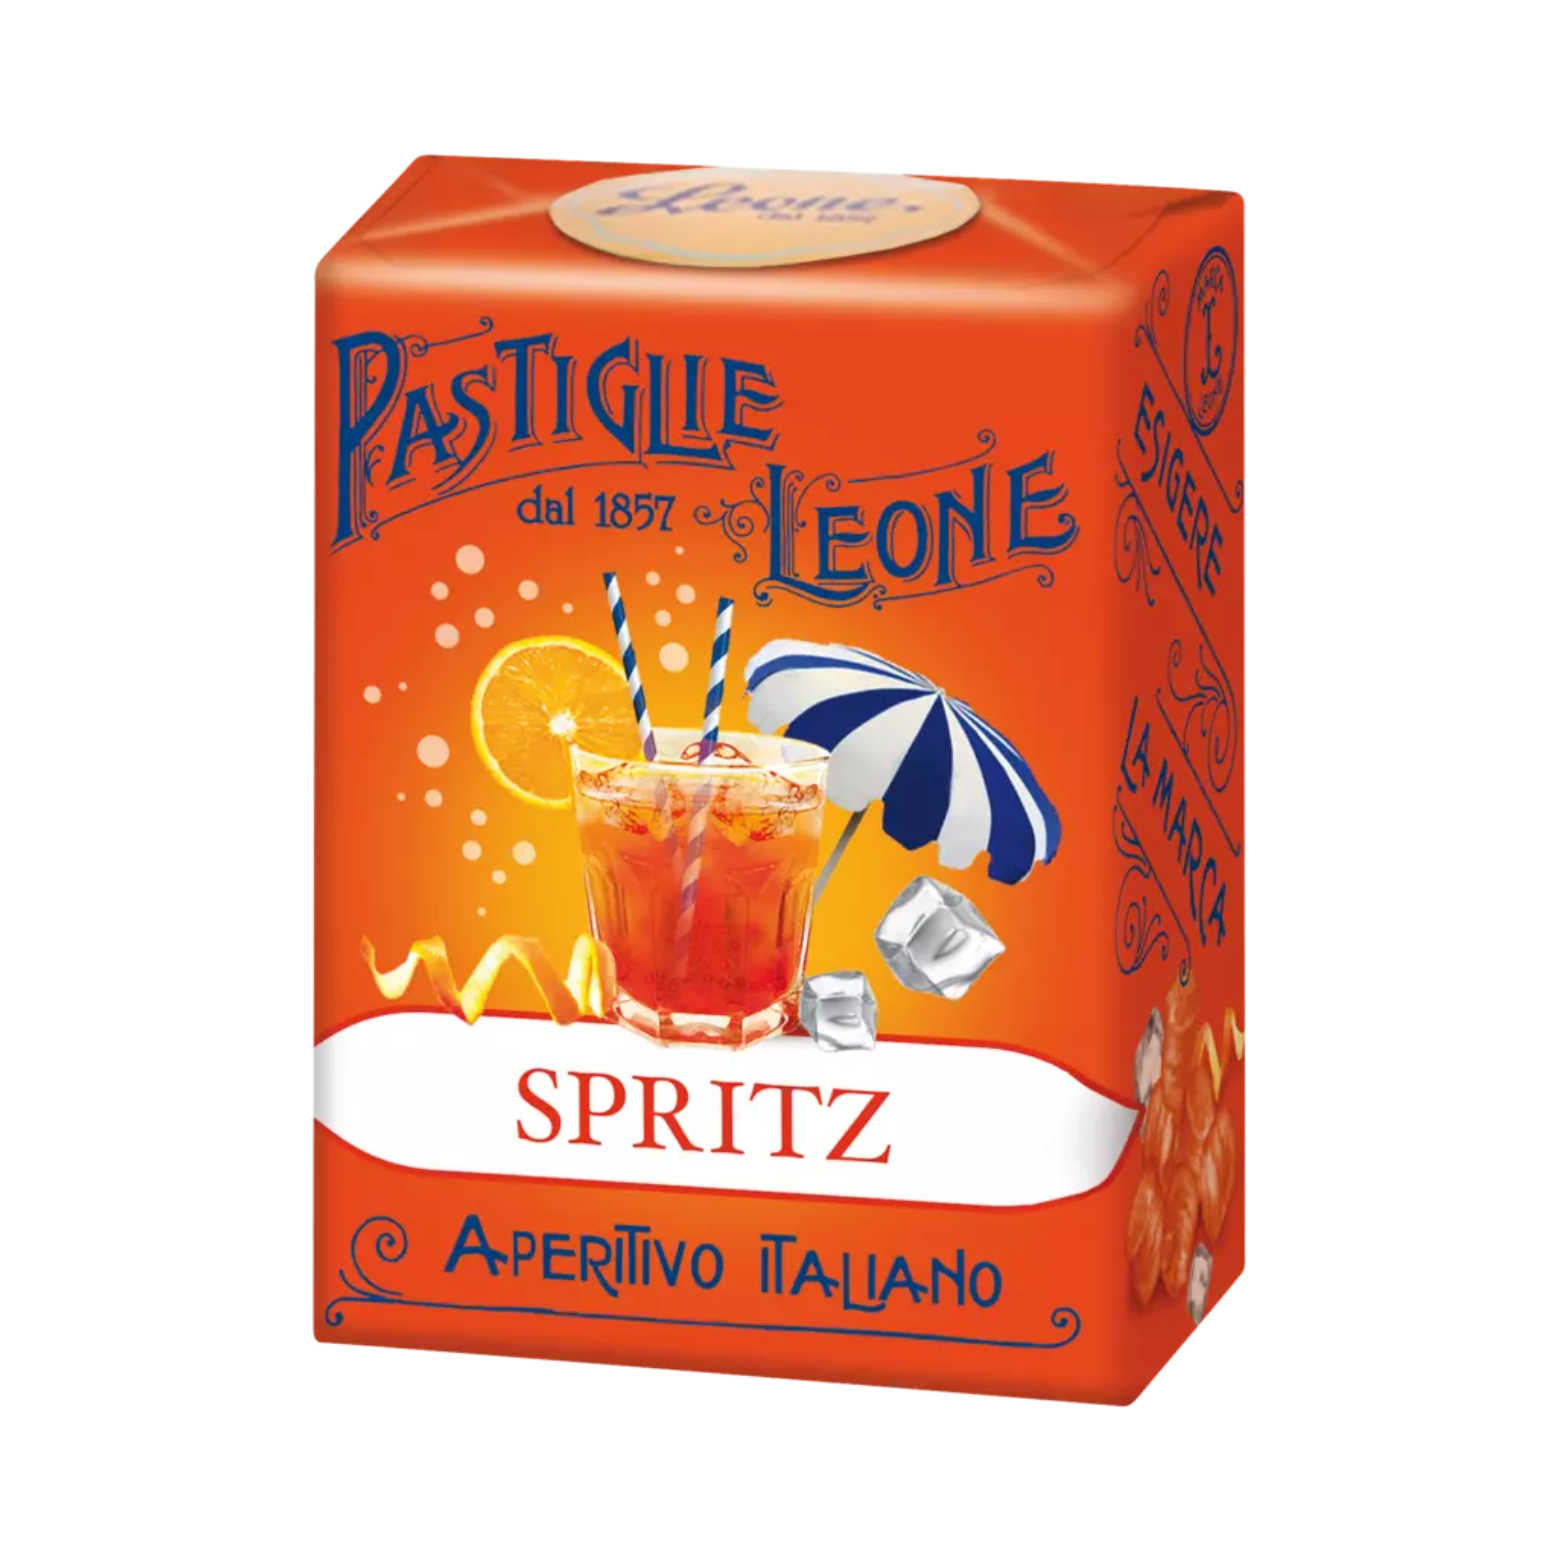 Pastiglie Leone Bonbons “Spritz”